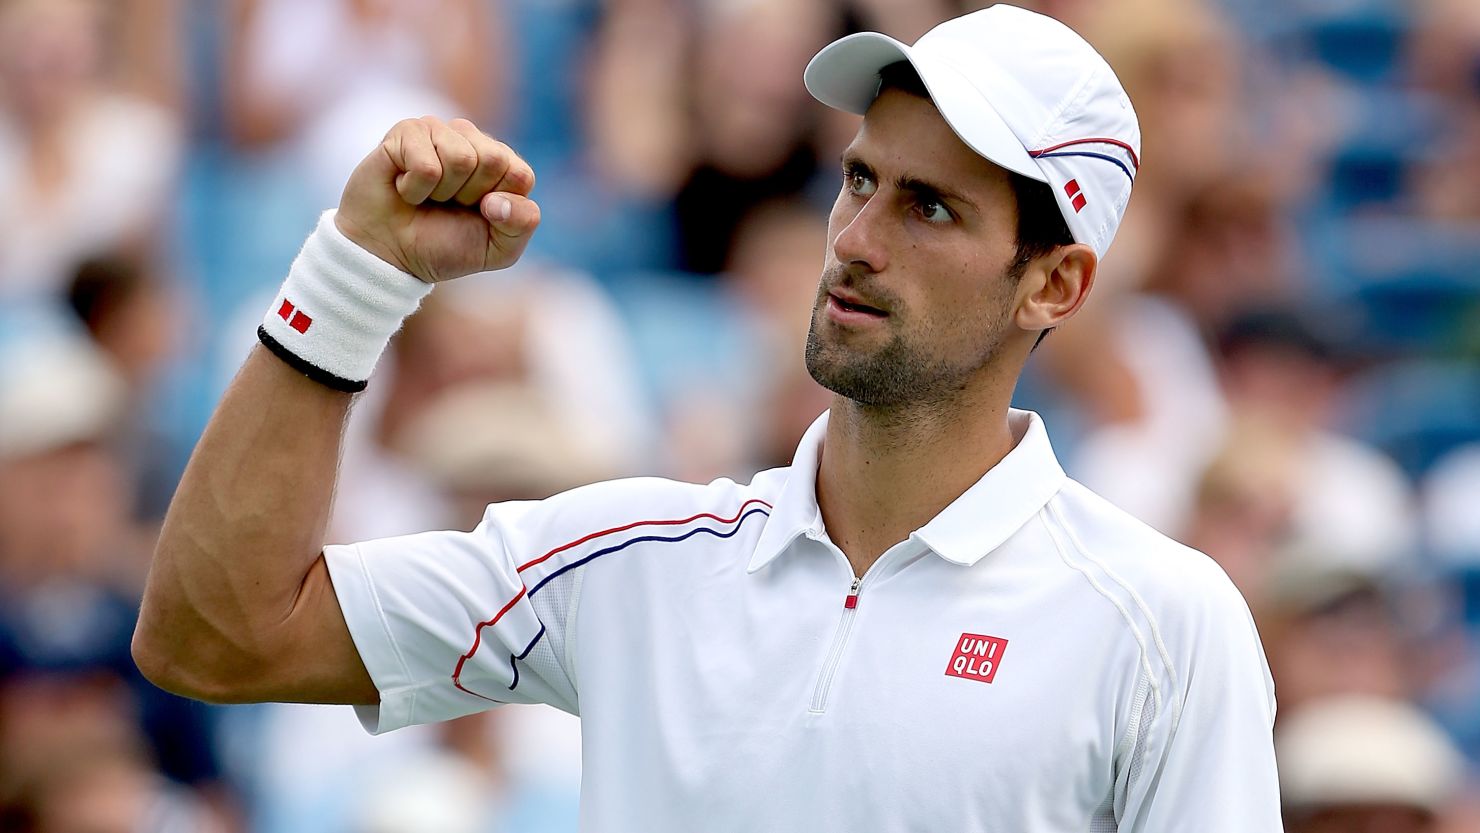 Novak Djokovic celebrates his win over Juan Martin Del Potro